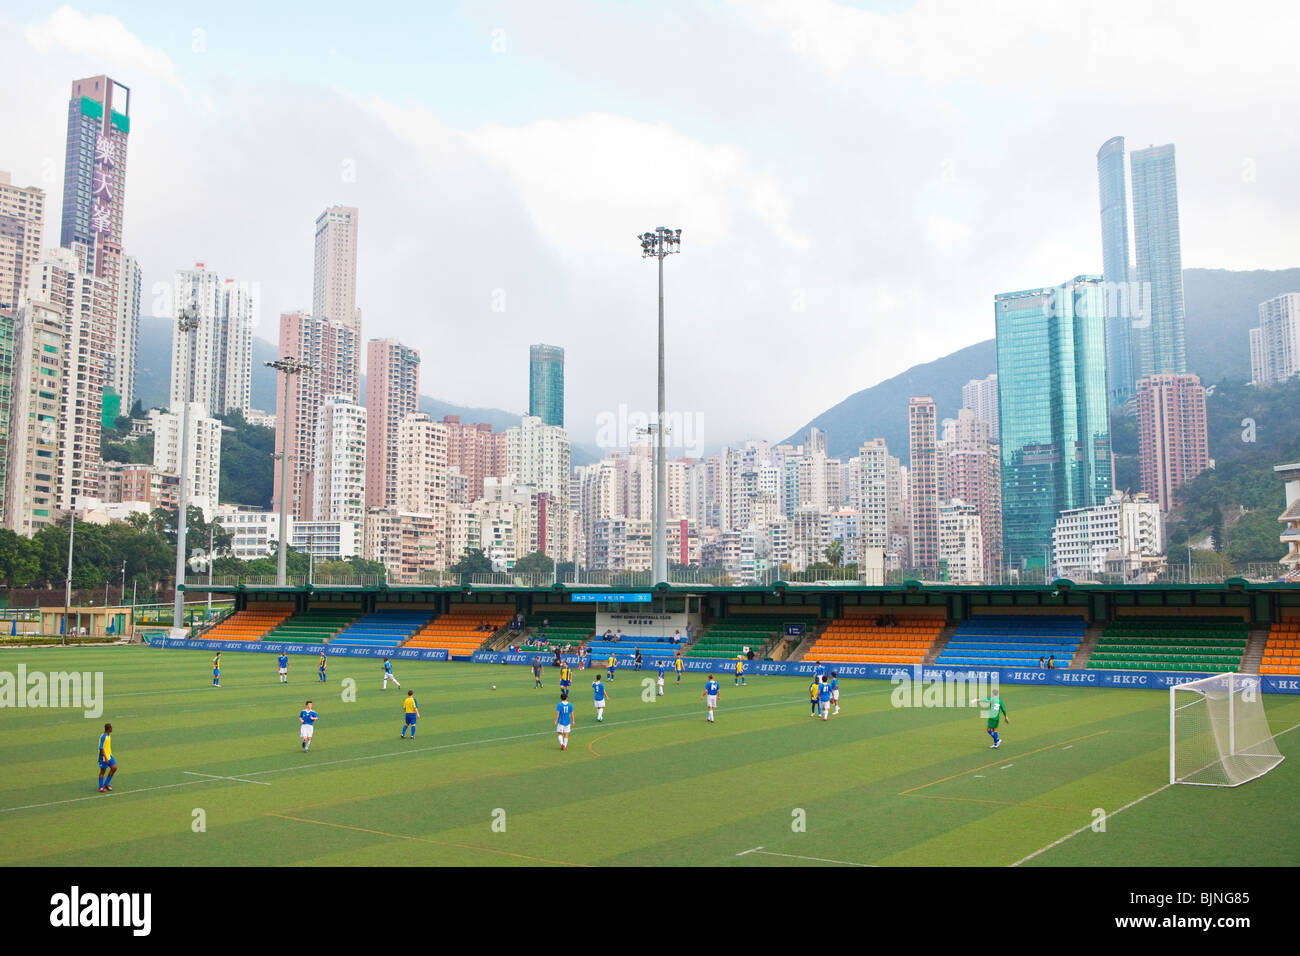 Un match de football se joue sur un emplacement à l'intérieur de la Vallée Heureuse Racing Course, Hong Kong Banque D'Images